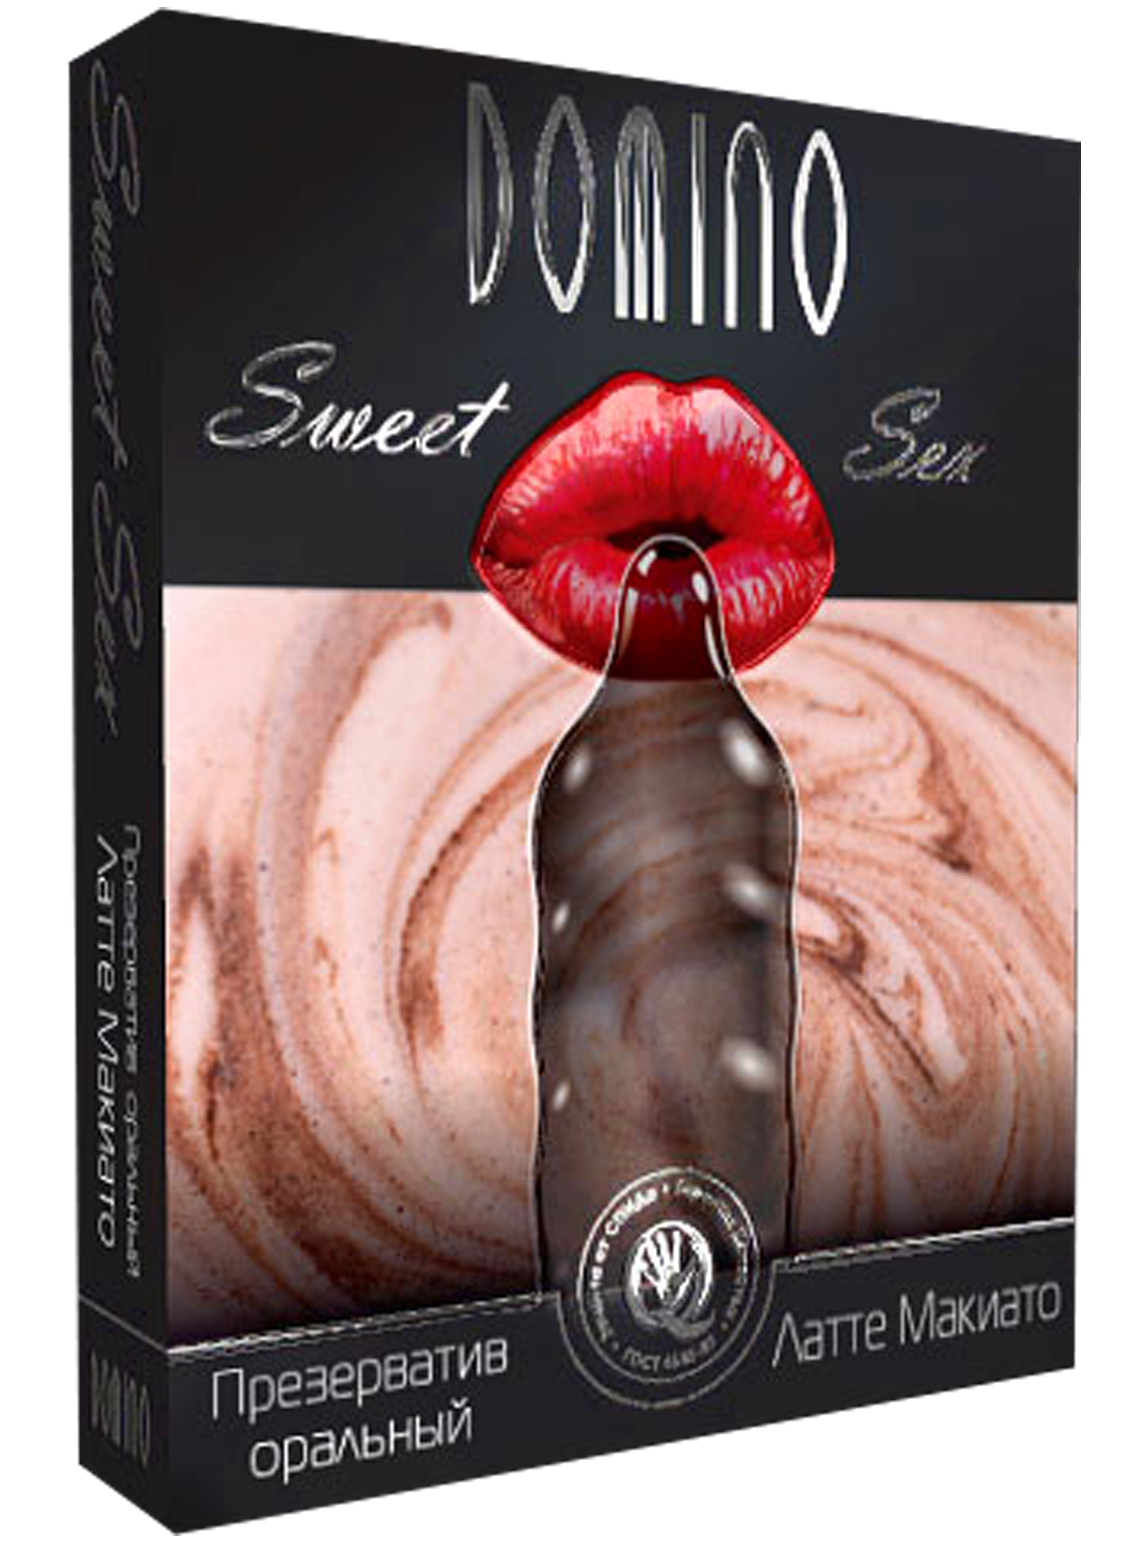 Luxe Domino Sweet Sex Latte Macchiato